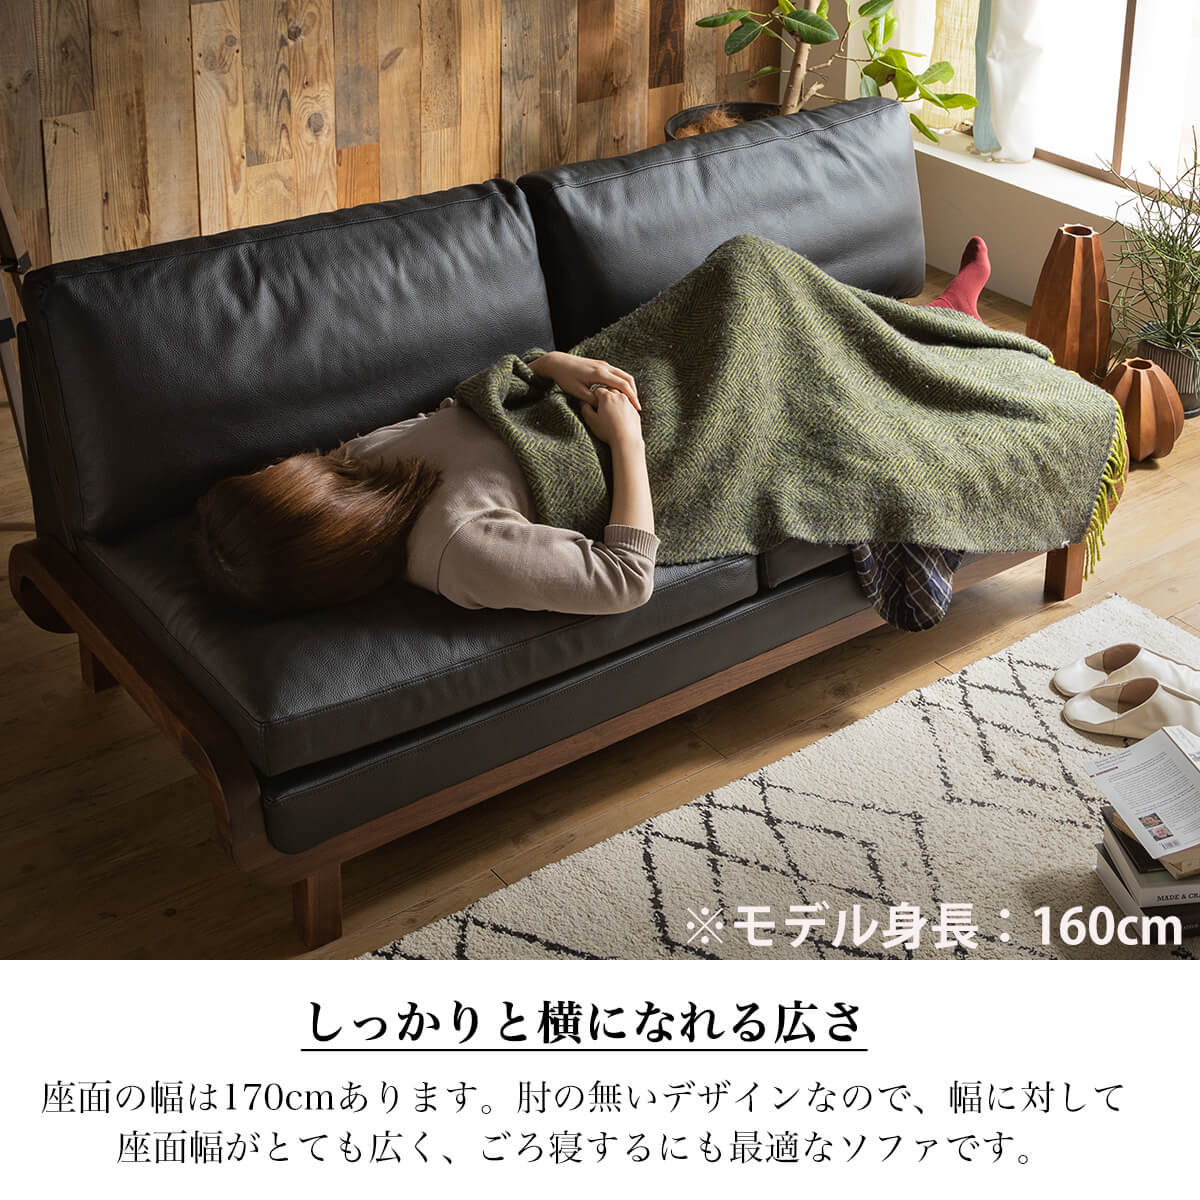 2.5人掛けソファ シギヤマ家具 ORSO (上代参考10.8万円) - ソファ